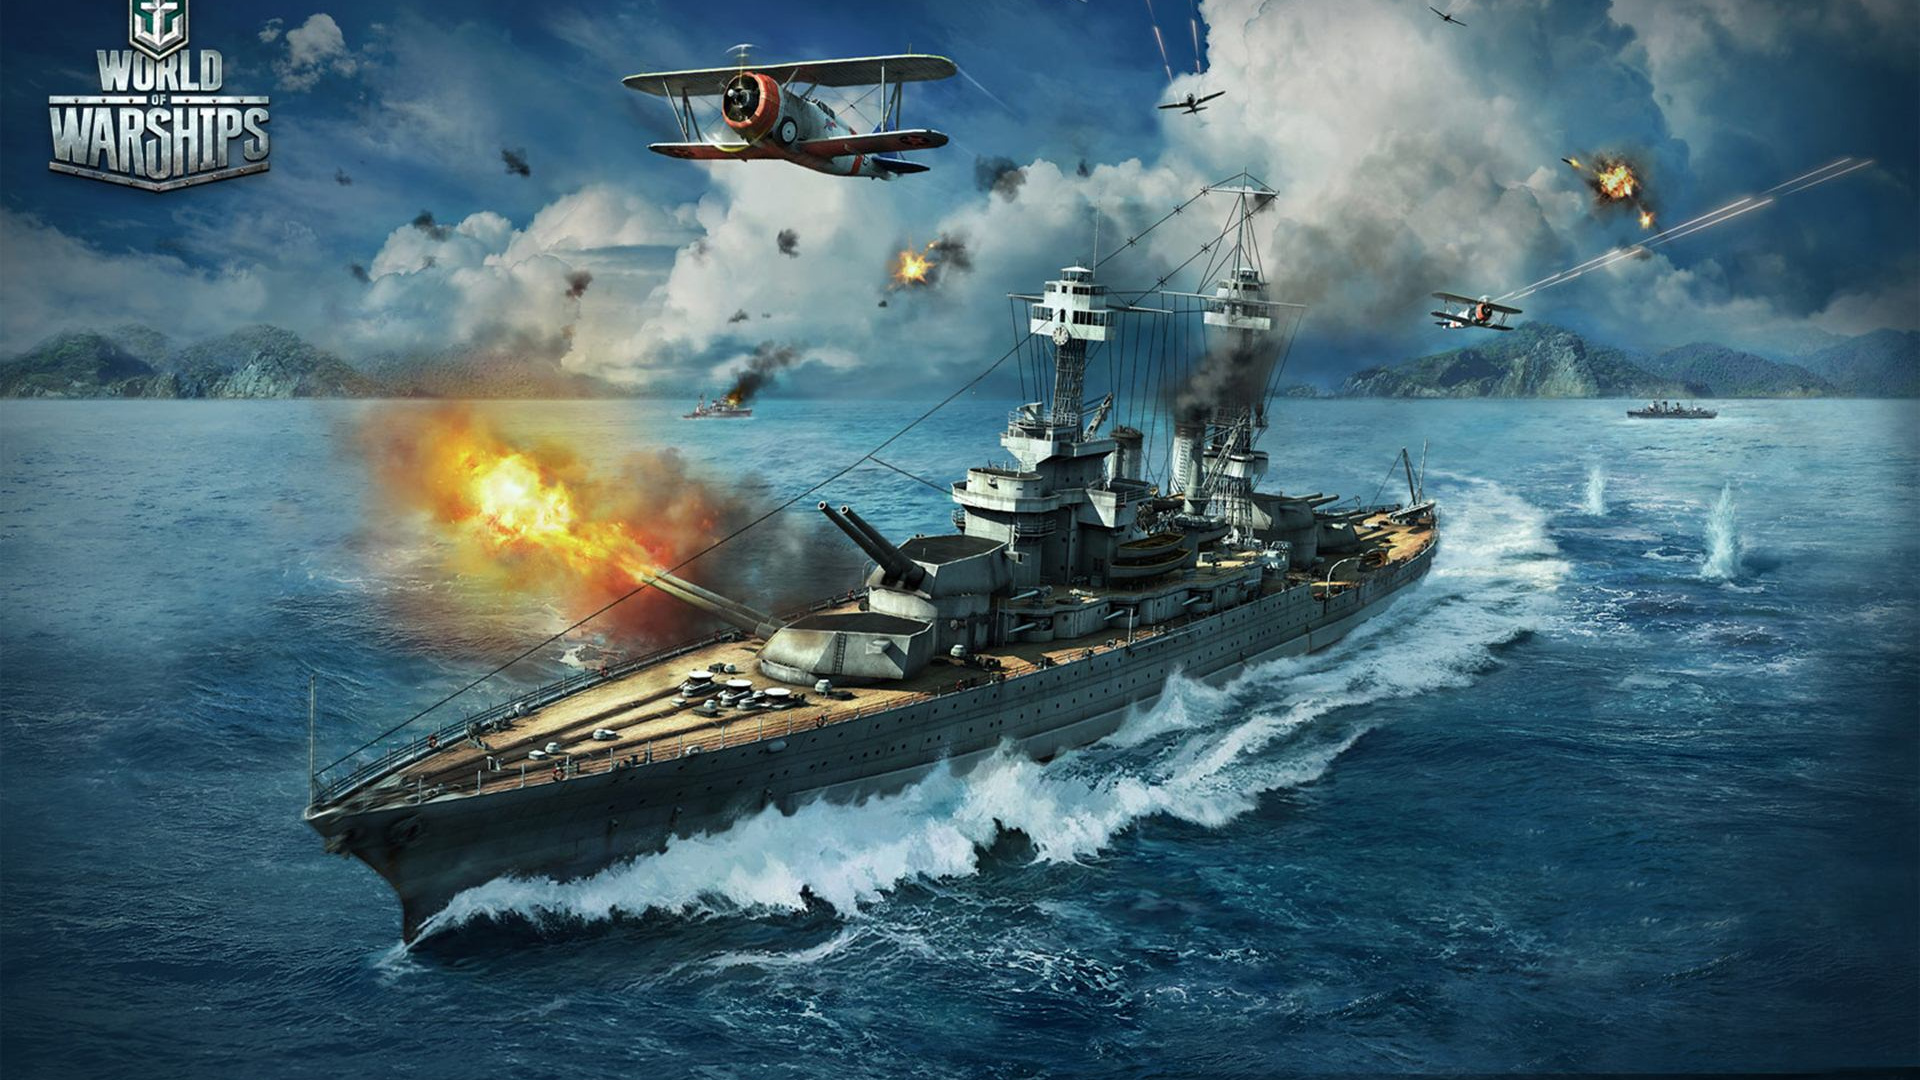 世界的战舰, 军舰, 大规模的网络游戏, 战舰, 海军的船 壁纸 1920x1080 允许